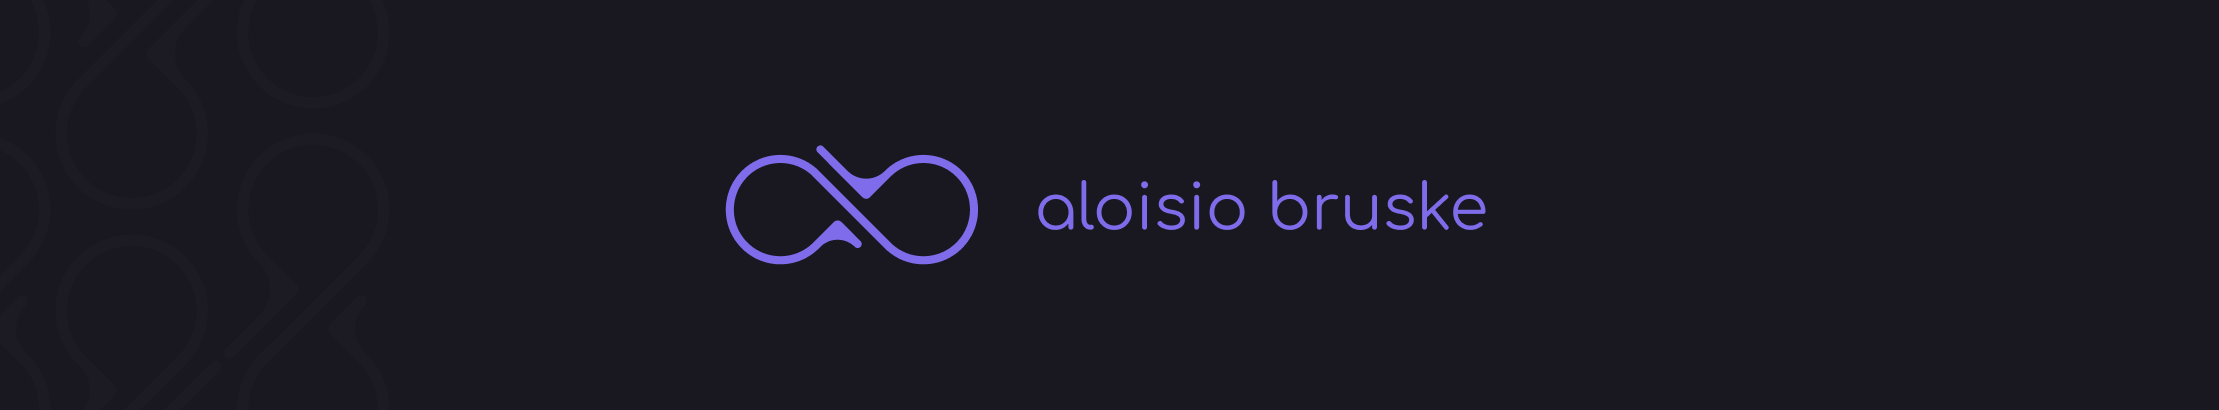 Banner de perfil de Aloisio Bruske